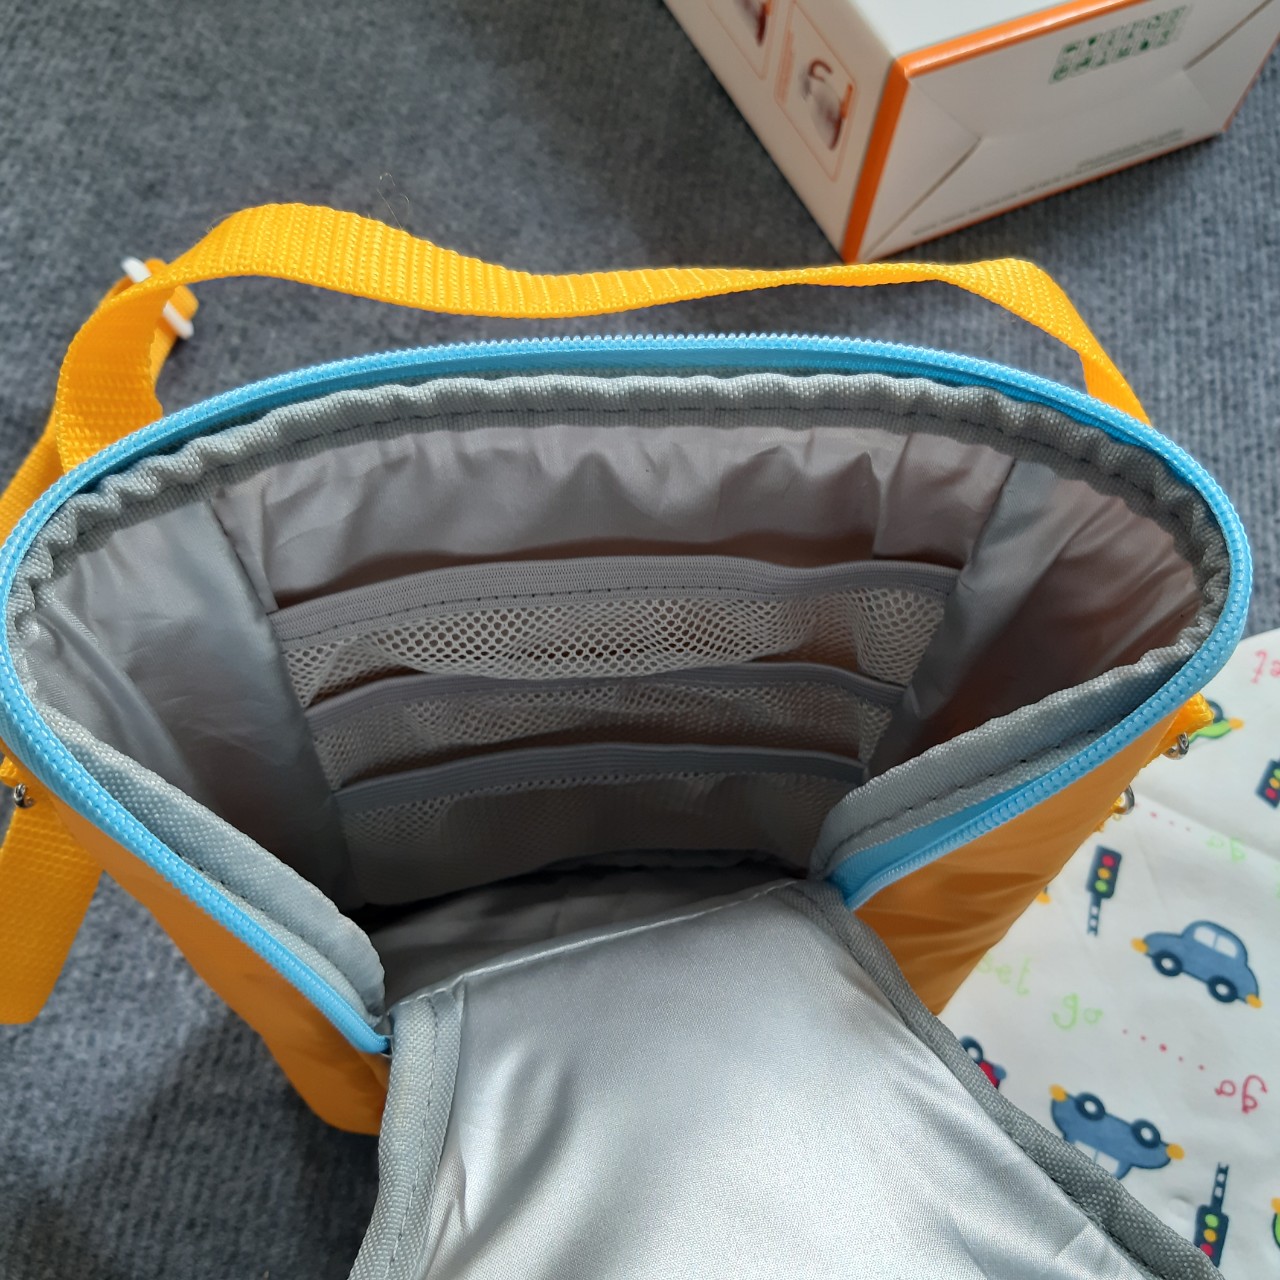 Túi giữ nhiệt ấm/lạnh fatzbaby (chứa được 2 bình sữa) + tặng 1 đá khô Unimom và 1 khăn giữ ấm cổ bé